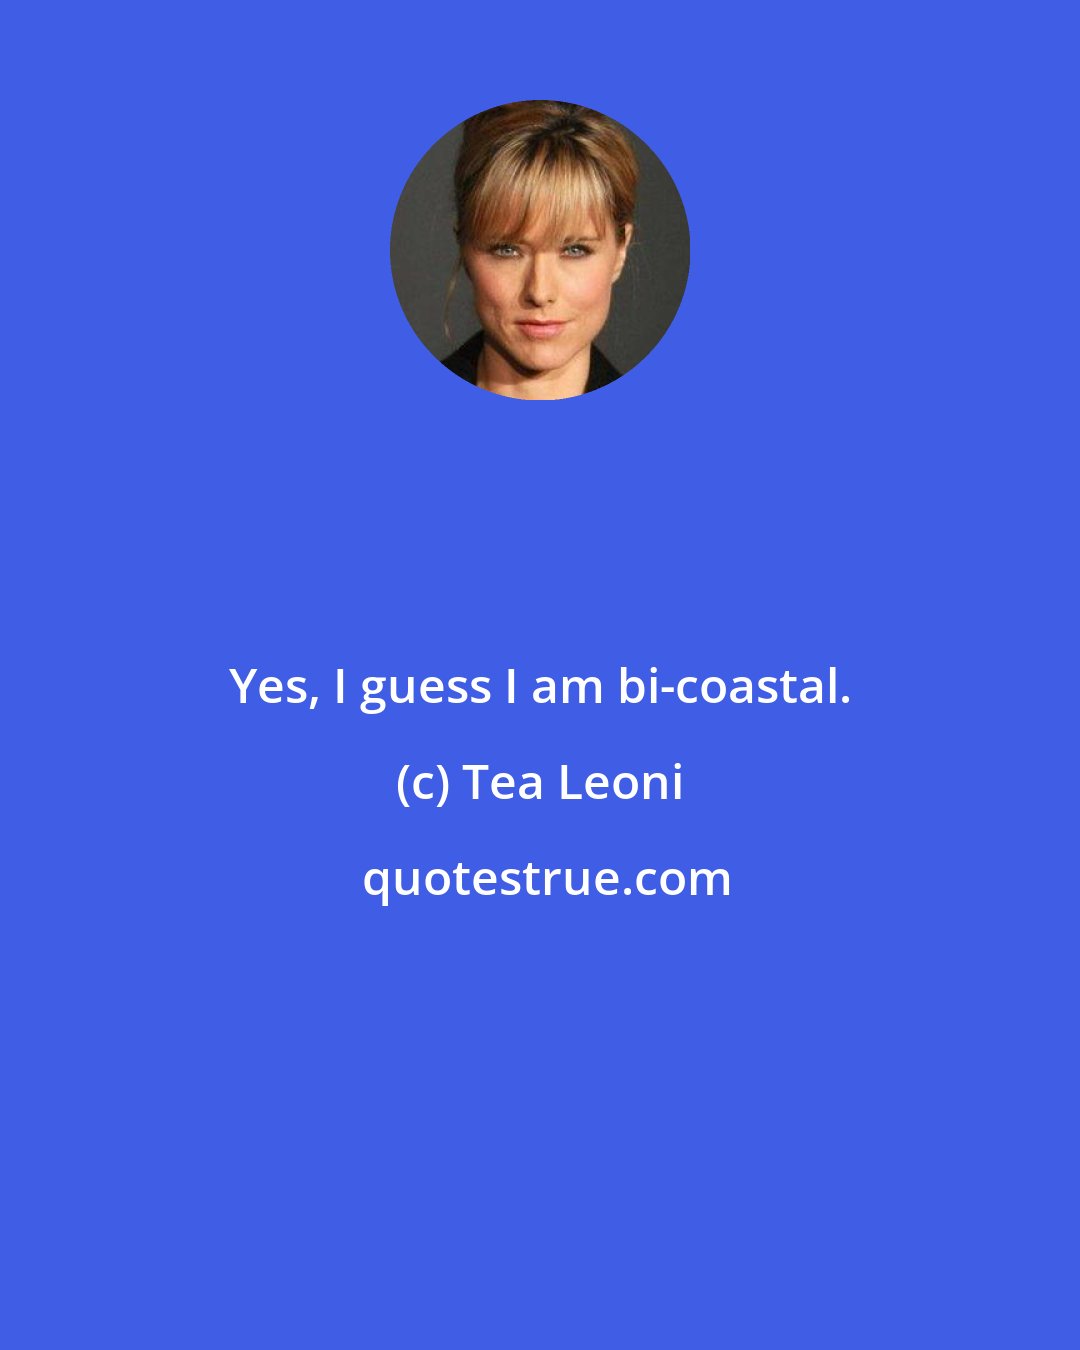 Tea Leoni: Yes, I guess I am bi-coastal.